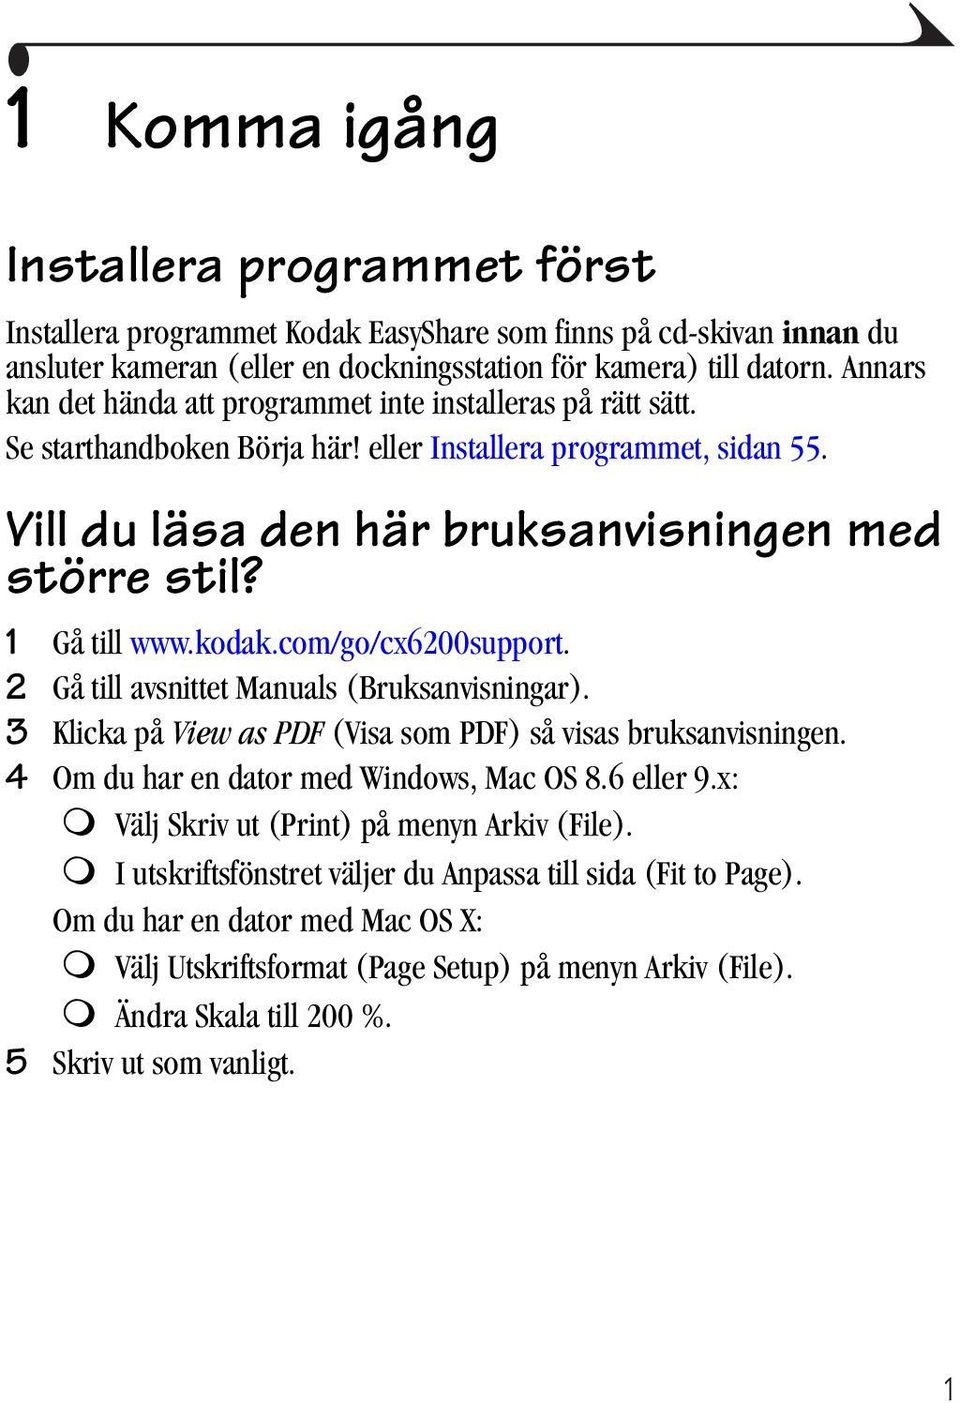 1 Gå till www.kodak.com/go/cx6200support. 2 Gå till avsnittet Manuals (Bruksanvisningar). 3 Klicka på View as PDF (Visa som PDF) så visas bruksanvisningen. 4 Om du har en dator med Windows, Mac OS 8.